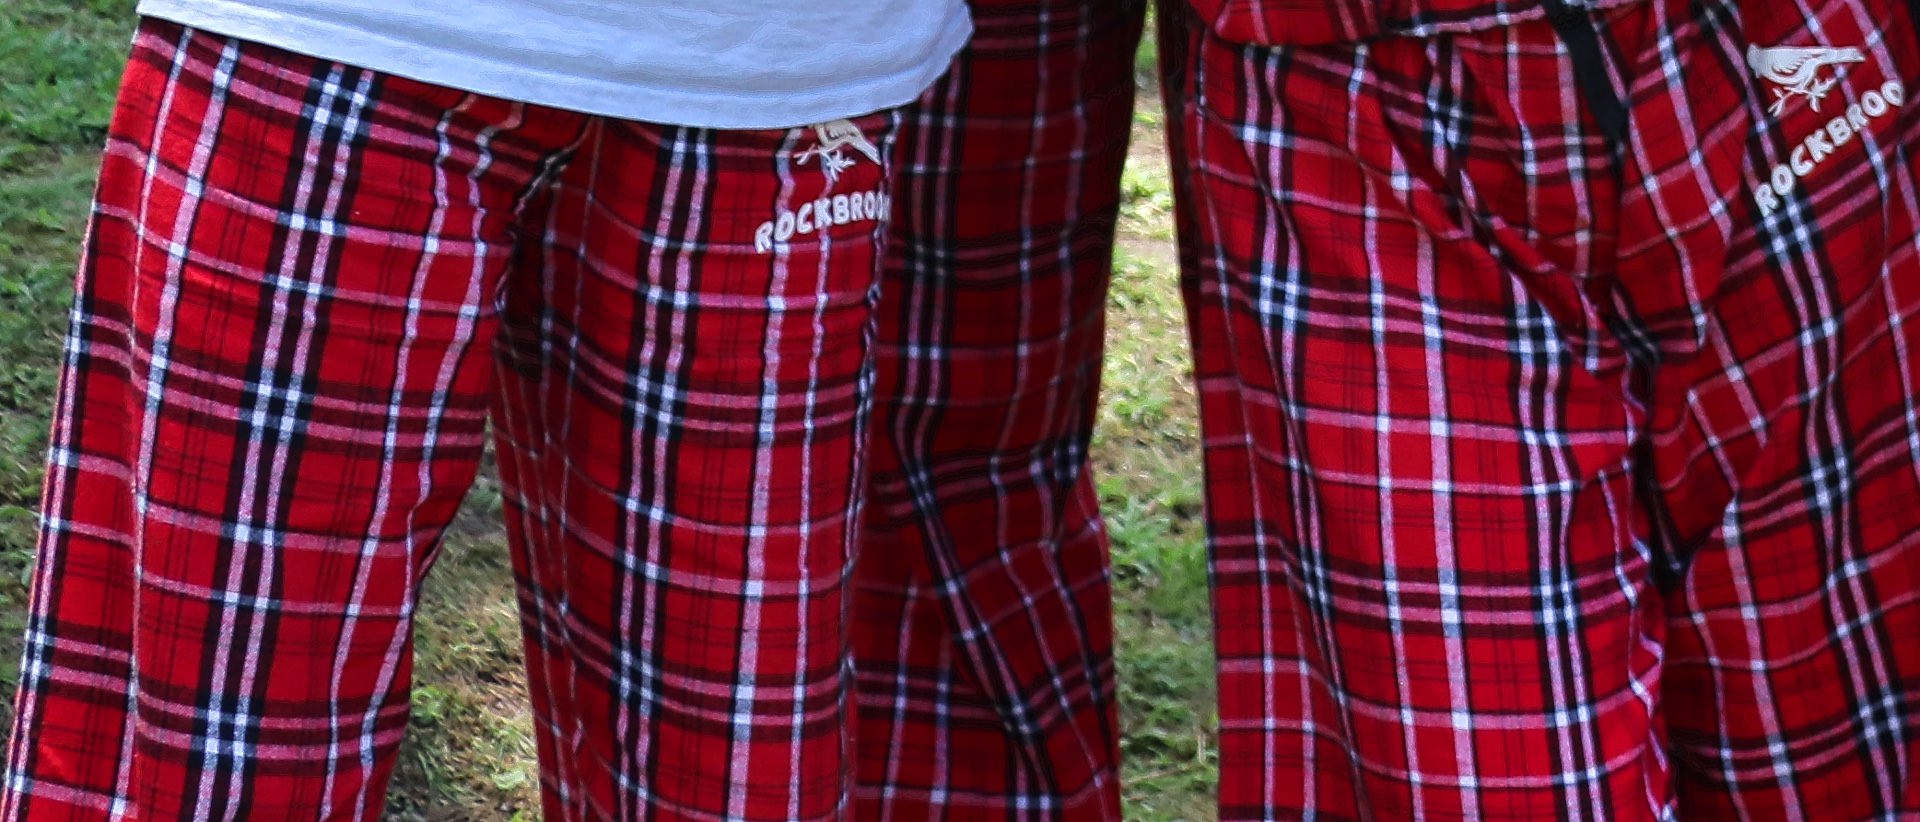 EYIIYE Men's Satin Pajama Pants Soft Long Pajama Bottoms Solid Lounging Pants  Pajama Bottoms - Walmart.com